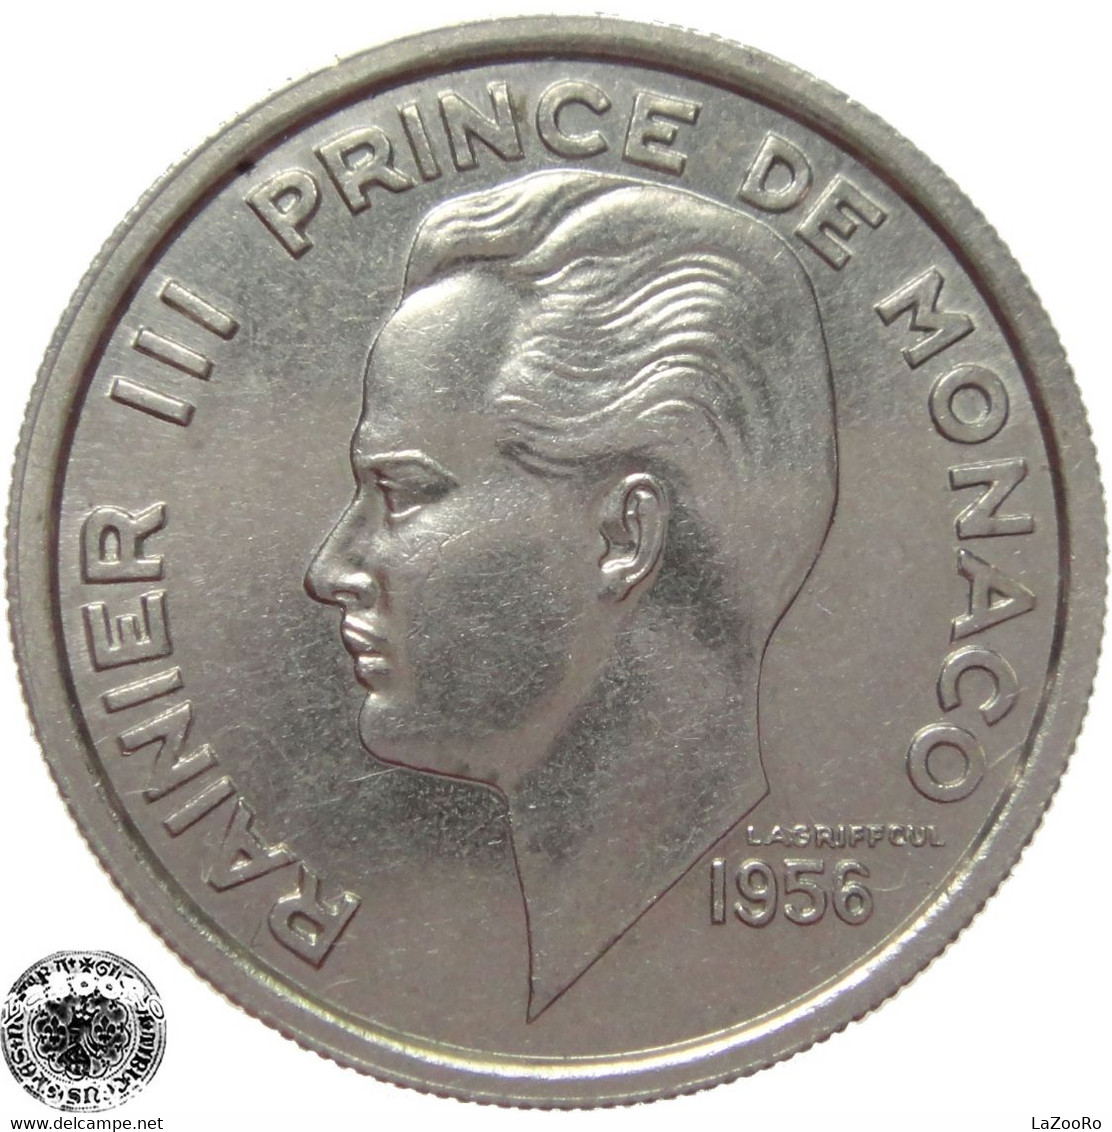 LaZooRo: Monaco 100 Francs 1956 UNC - 1949-1956 Anciens Francs